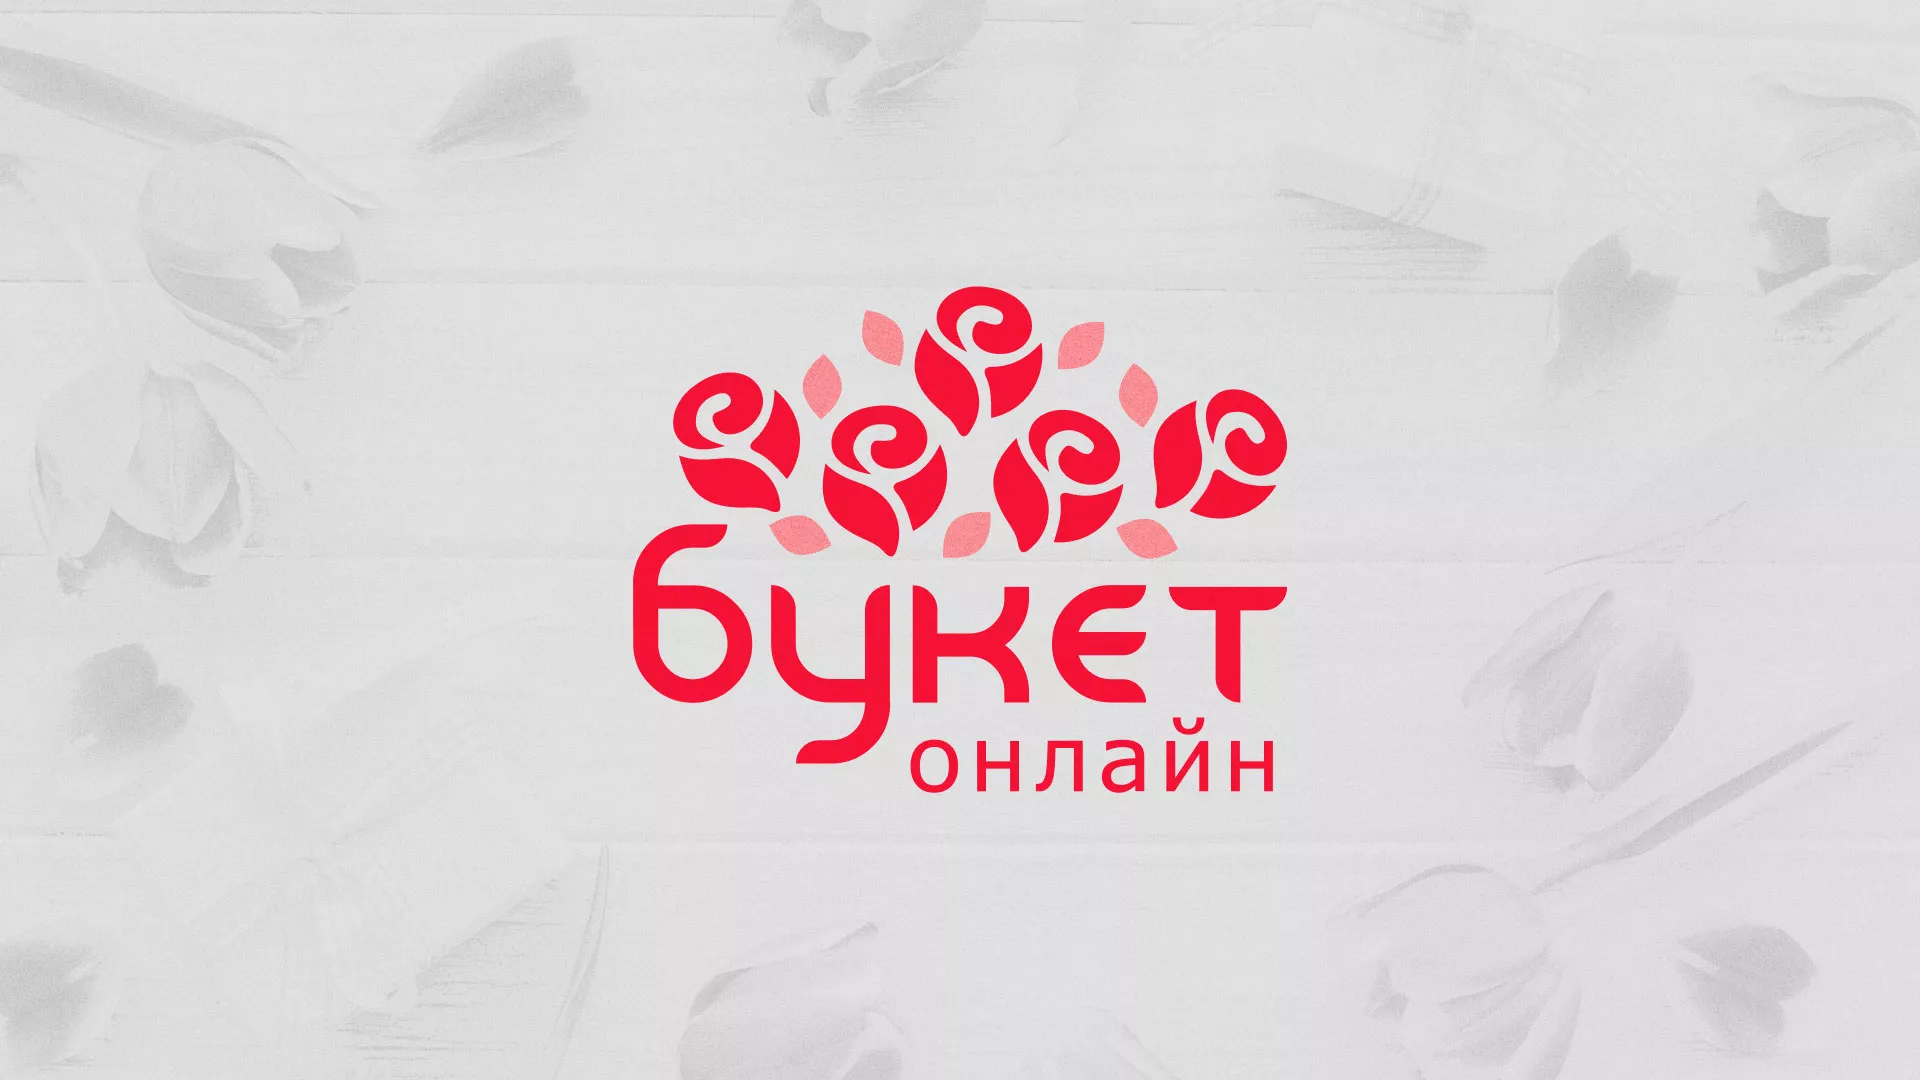 Создание интернет-магазина «Букет-онлайн» по цветам в Таштаголе